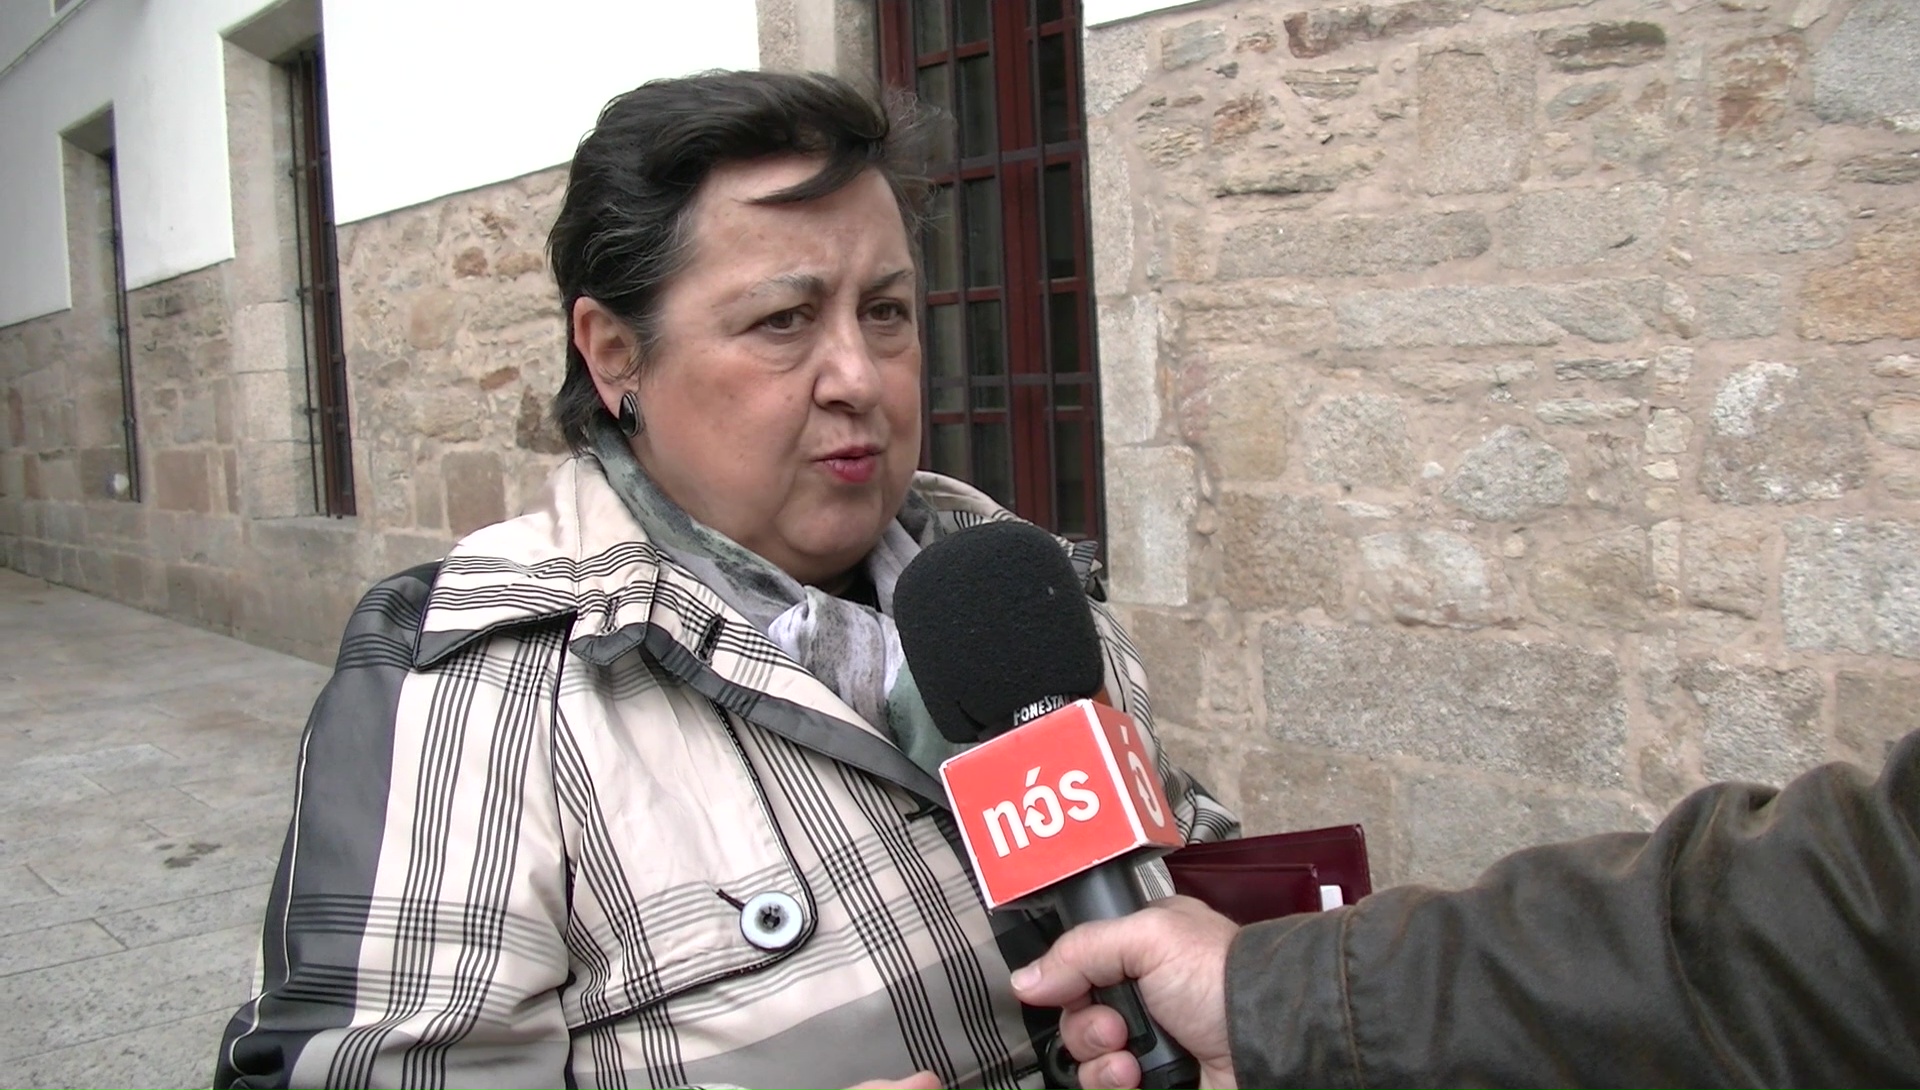 Comezan as xornadas sobre as Irmandades da Fala en Compostela